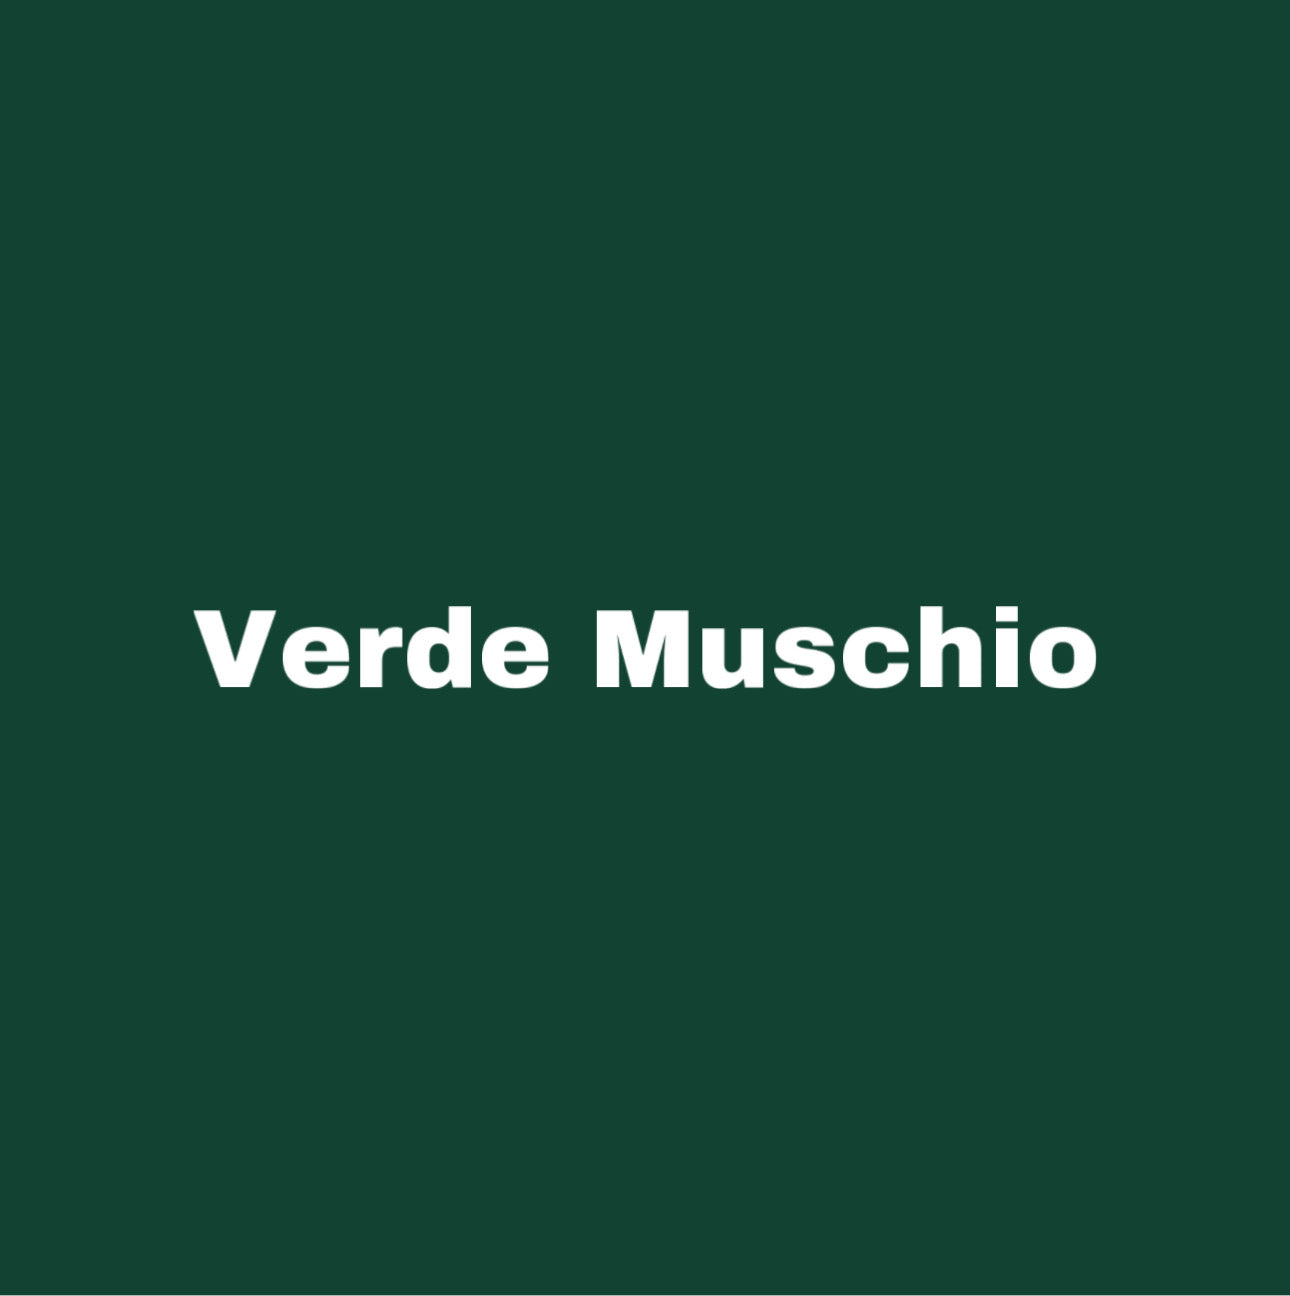 verdemuschio-happycolor